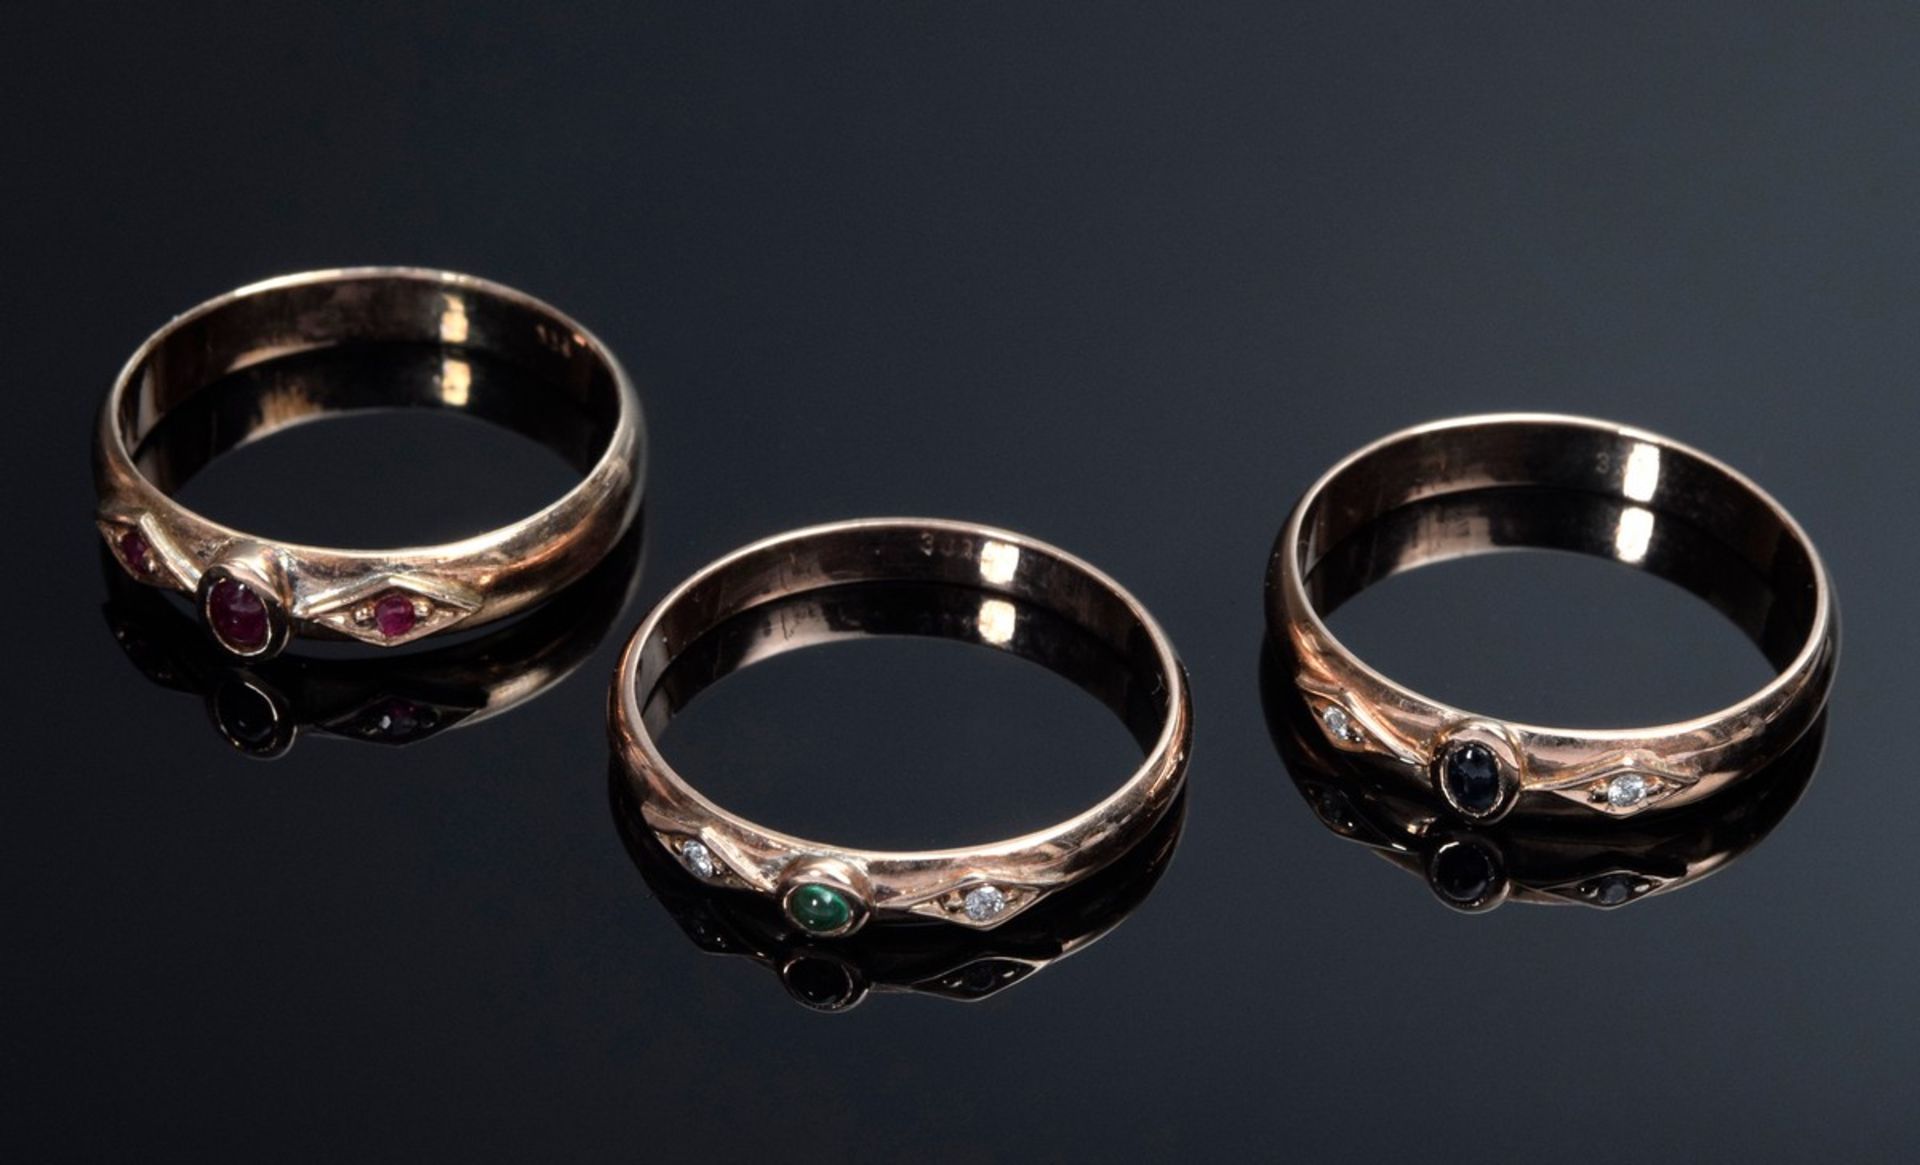 3 Diverse RG 333 Ringe mit Turmalinen, Rubinen, Smaragd und Brillantbesatz, 6, - Bild 2 aus 2